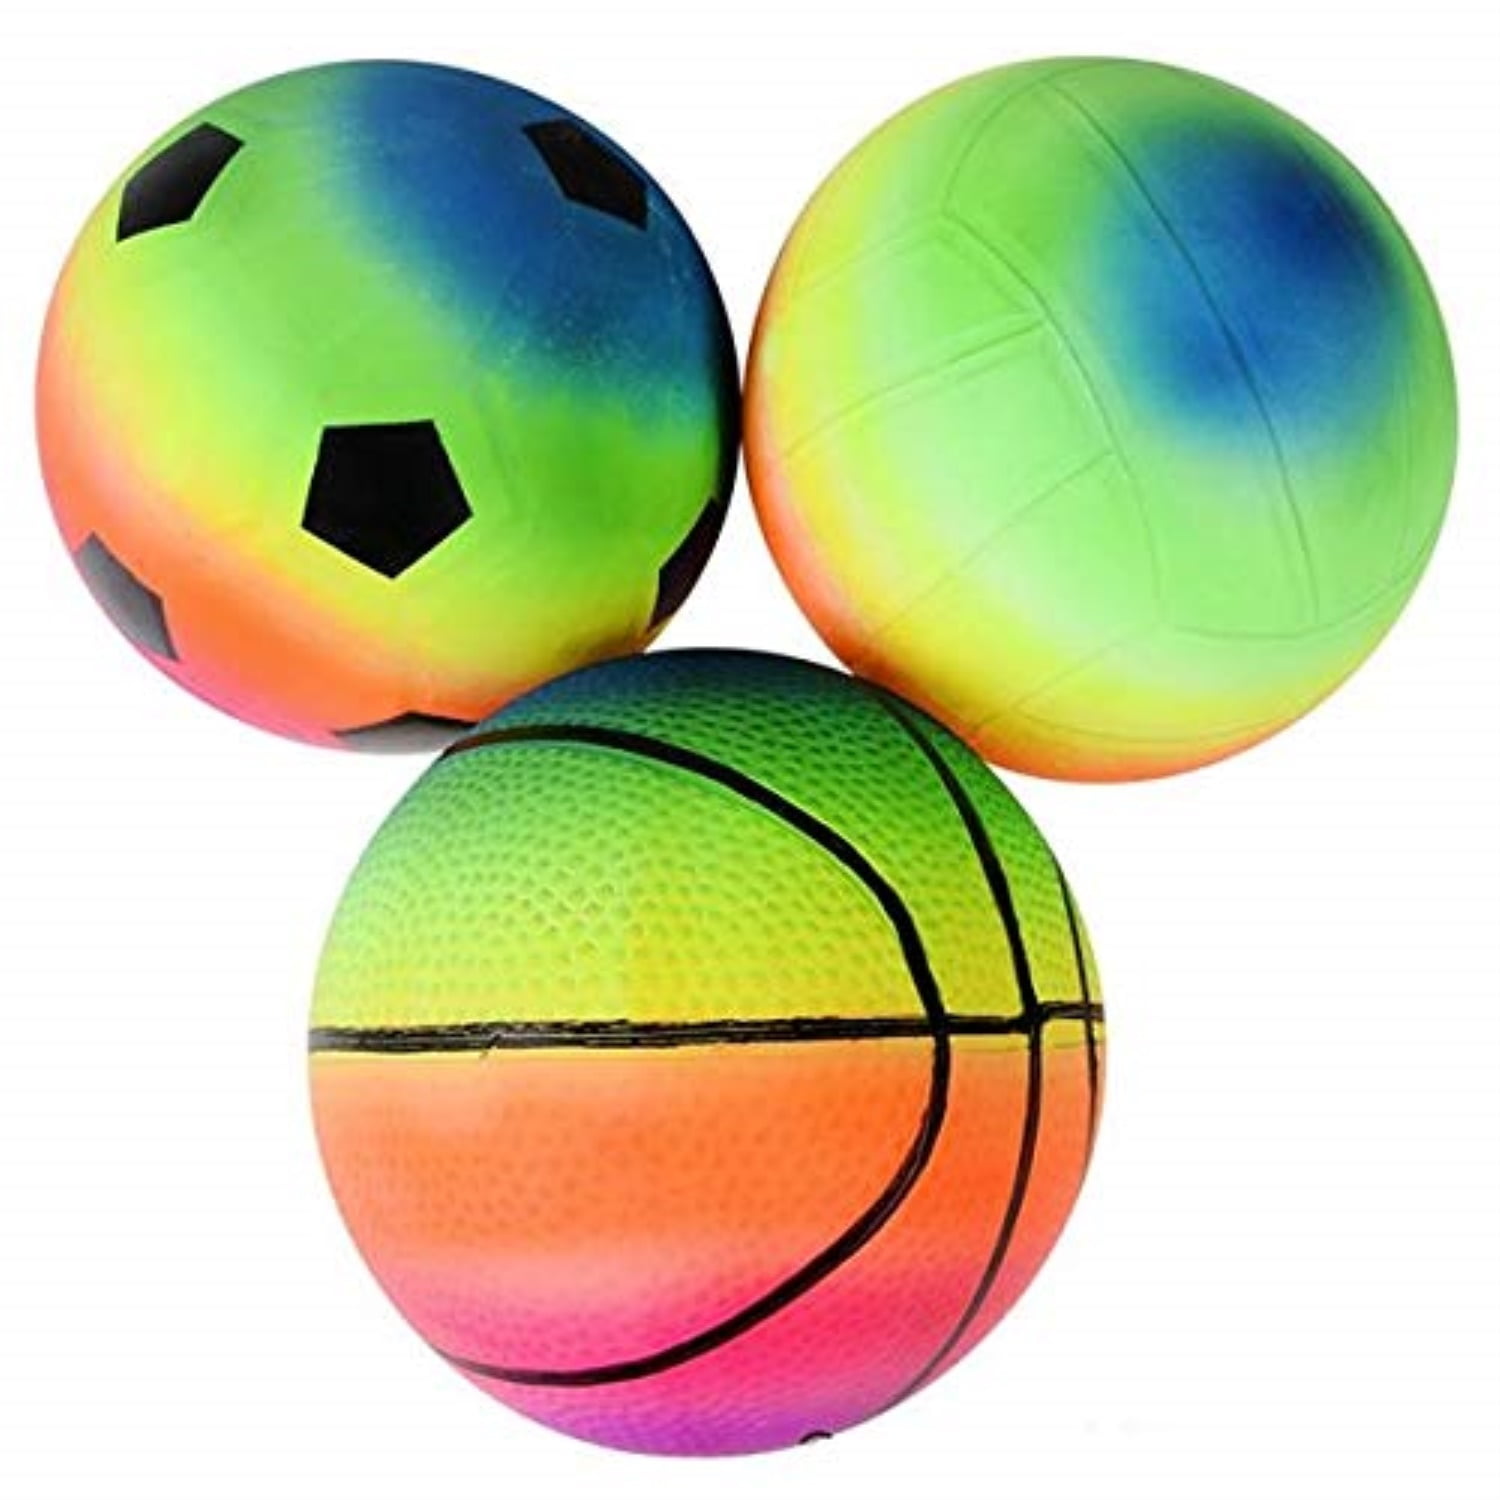 Радужный мяч игры. Резиновый мяч. Разноцветные мячики. Мячик разноцветный надувной. Радужный баскетбольный мяч.